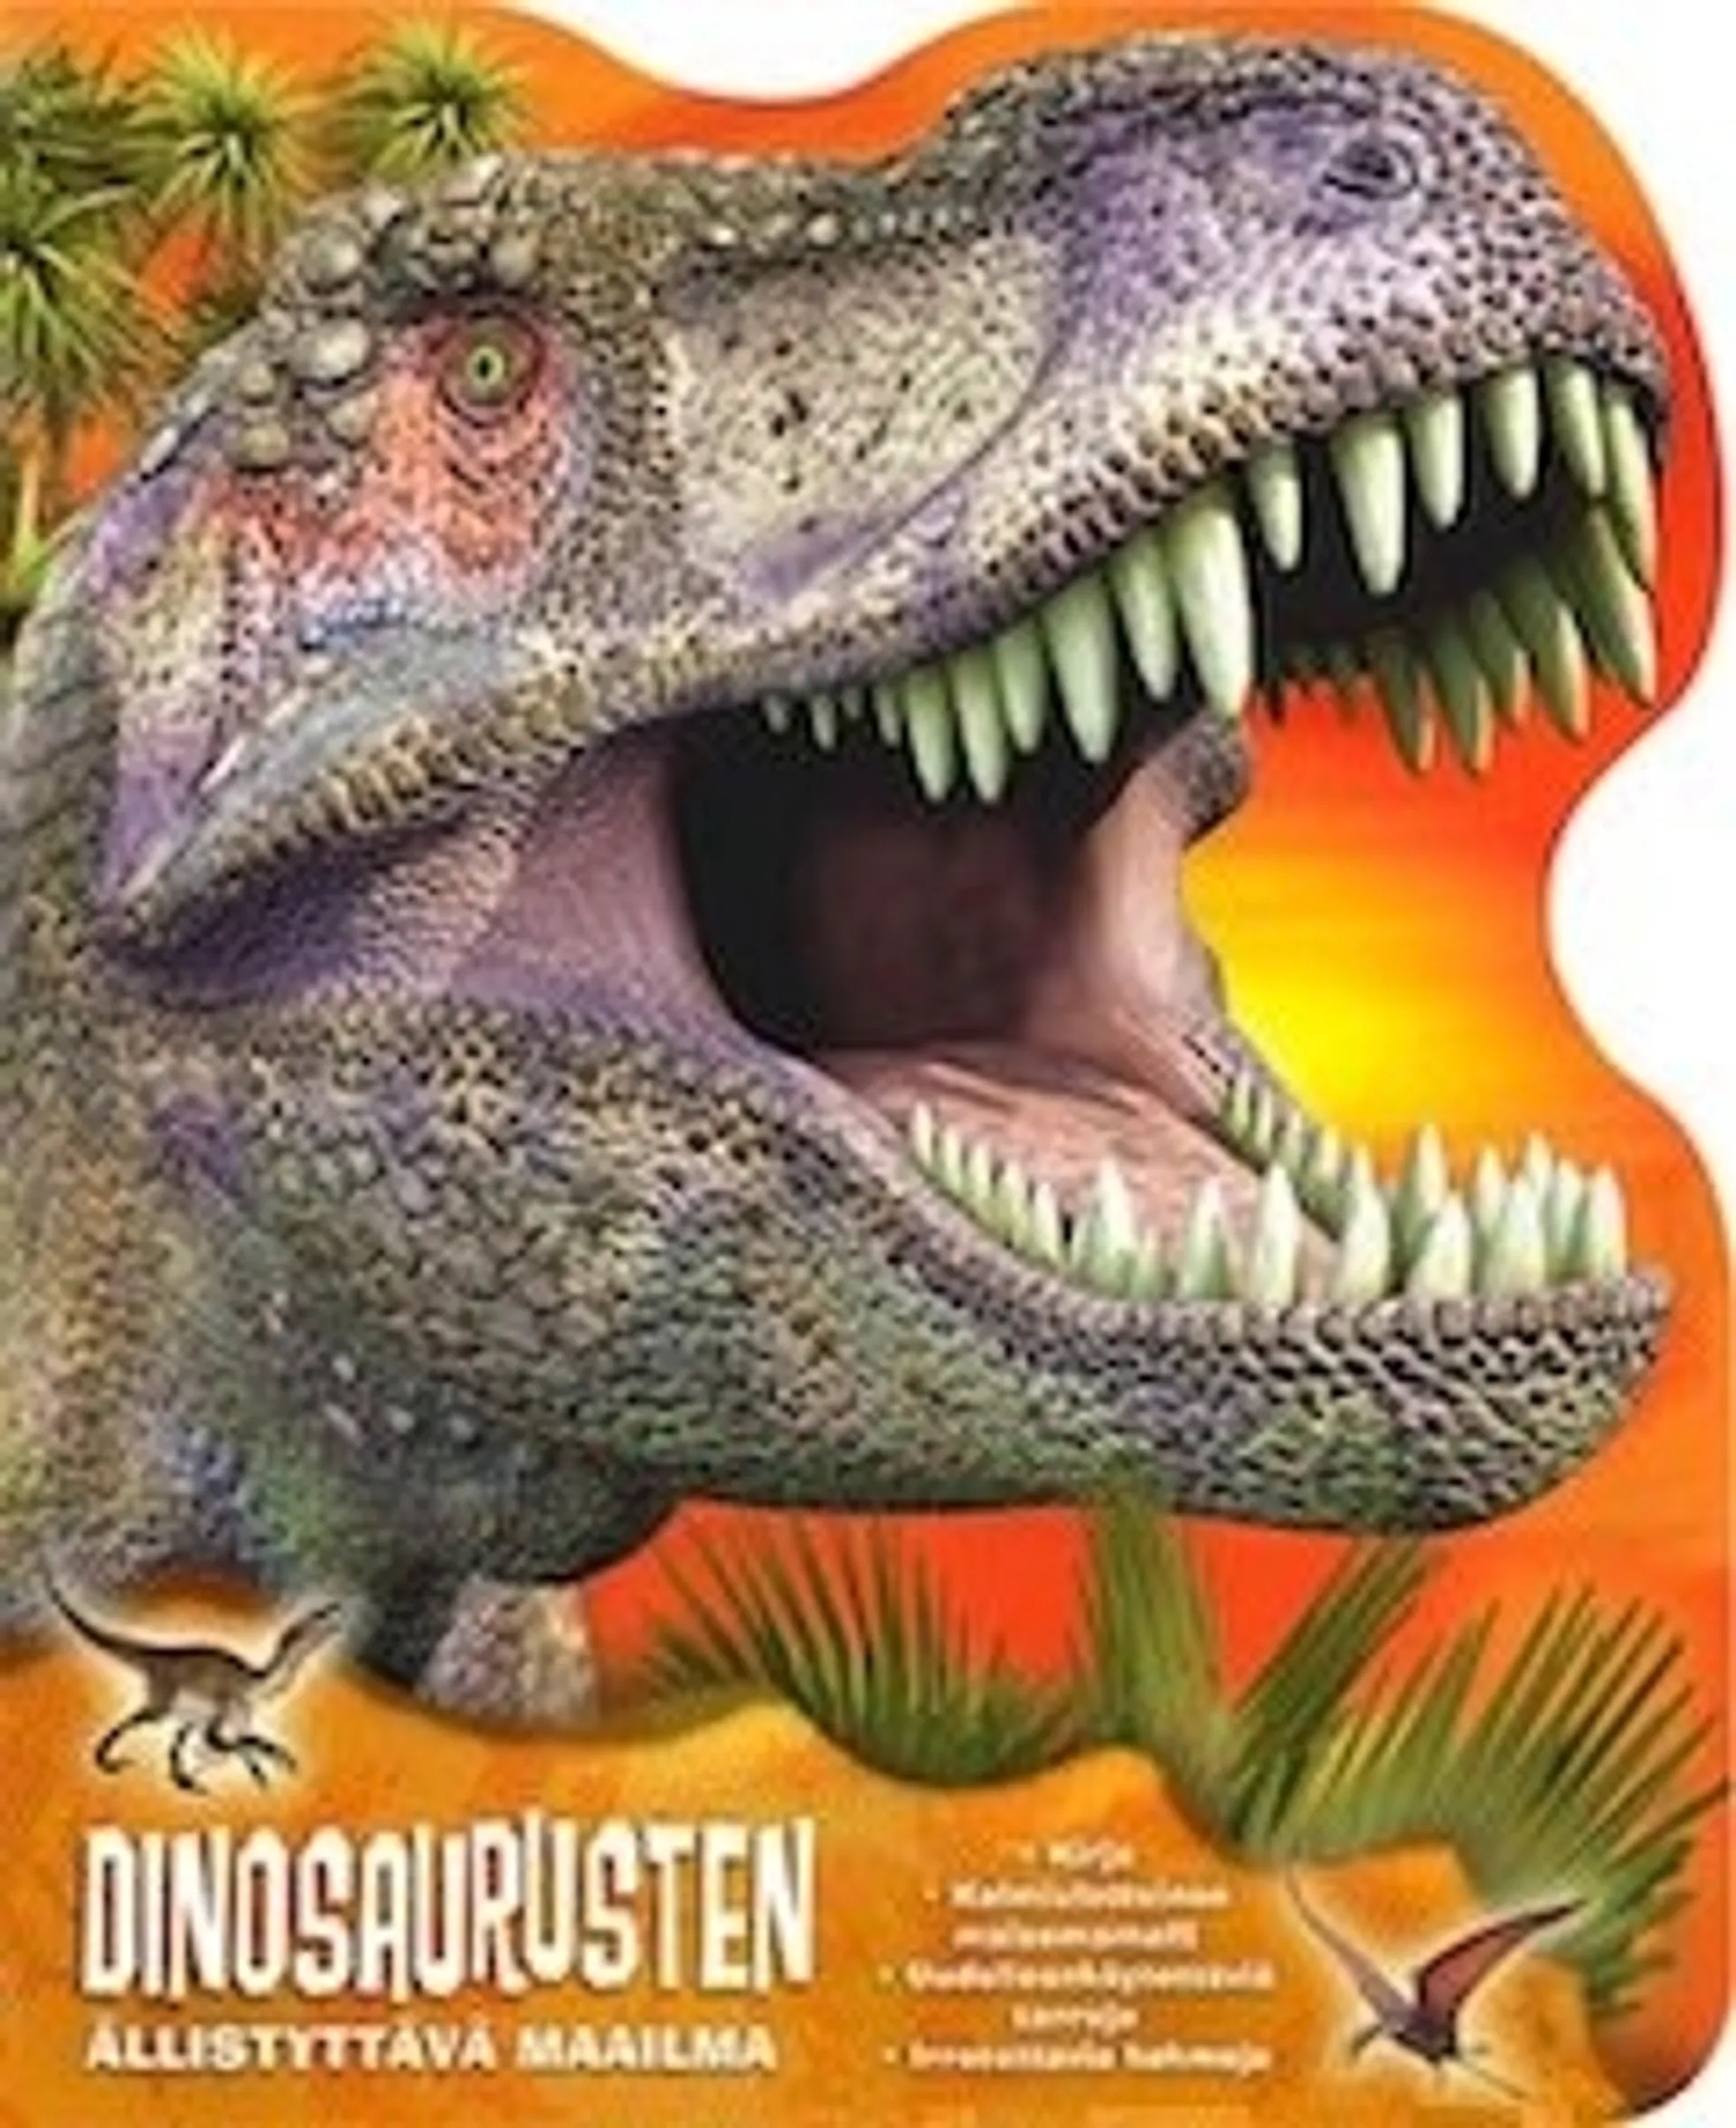 Dinosaurusten ällistyttävä maailma